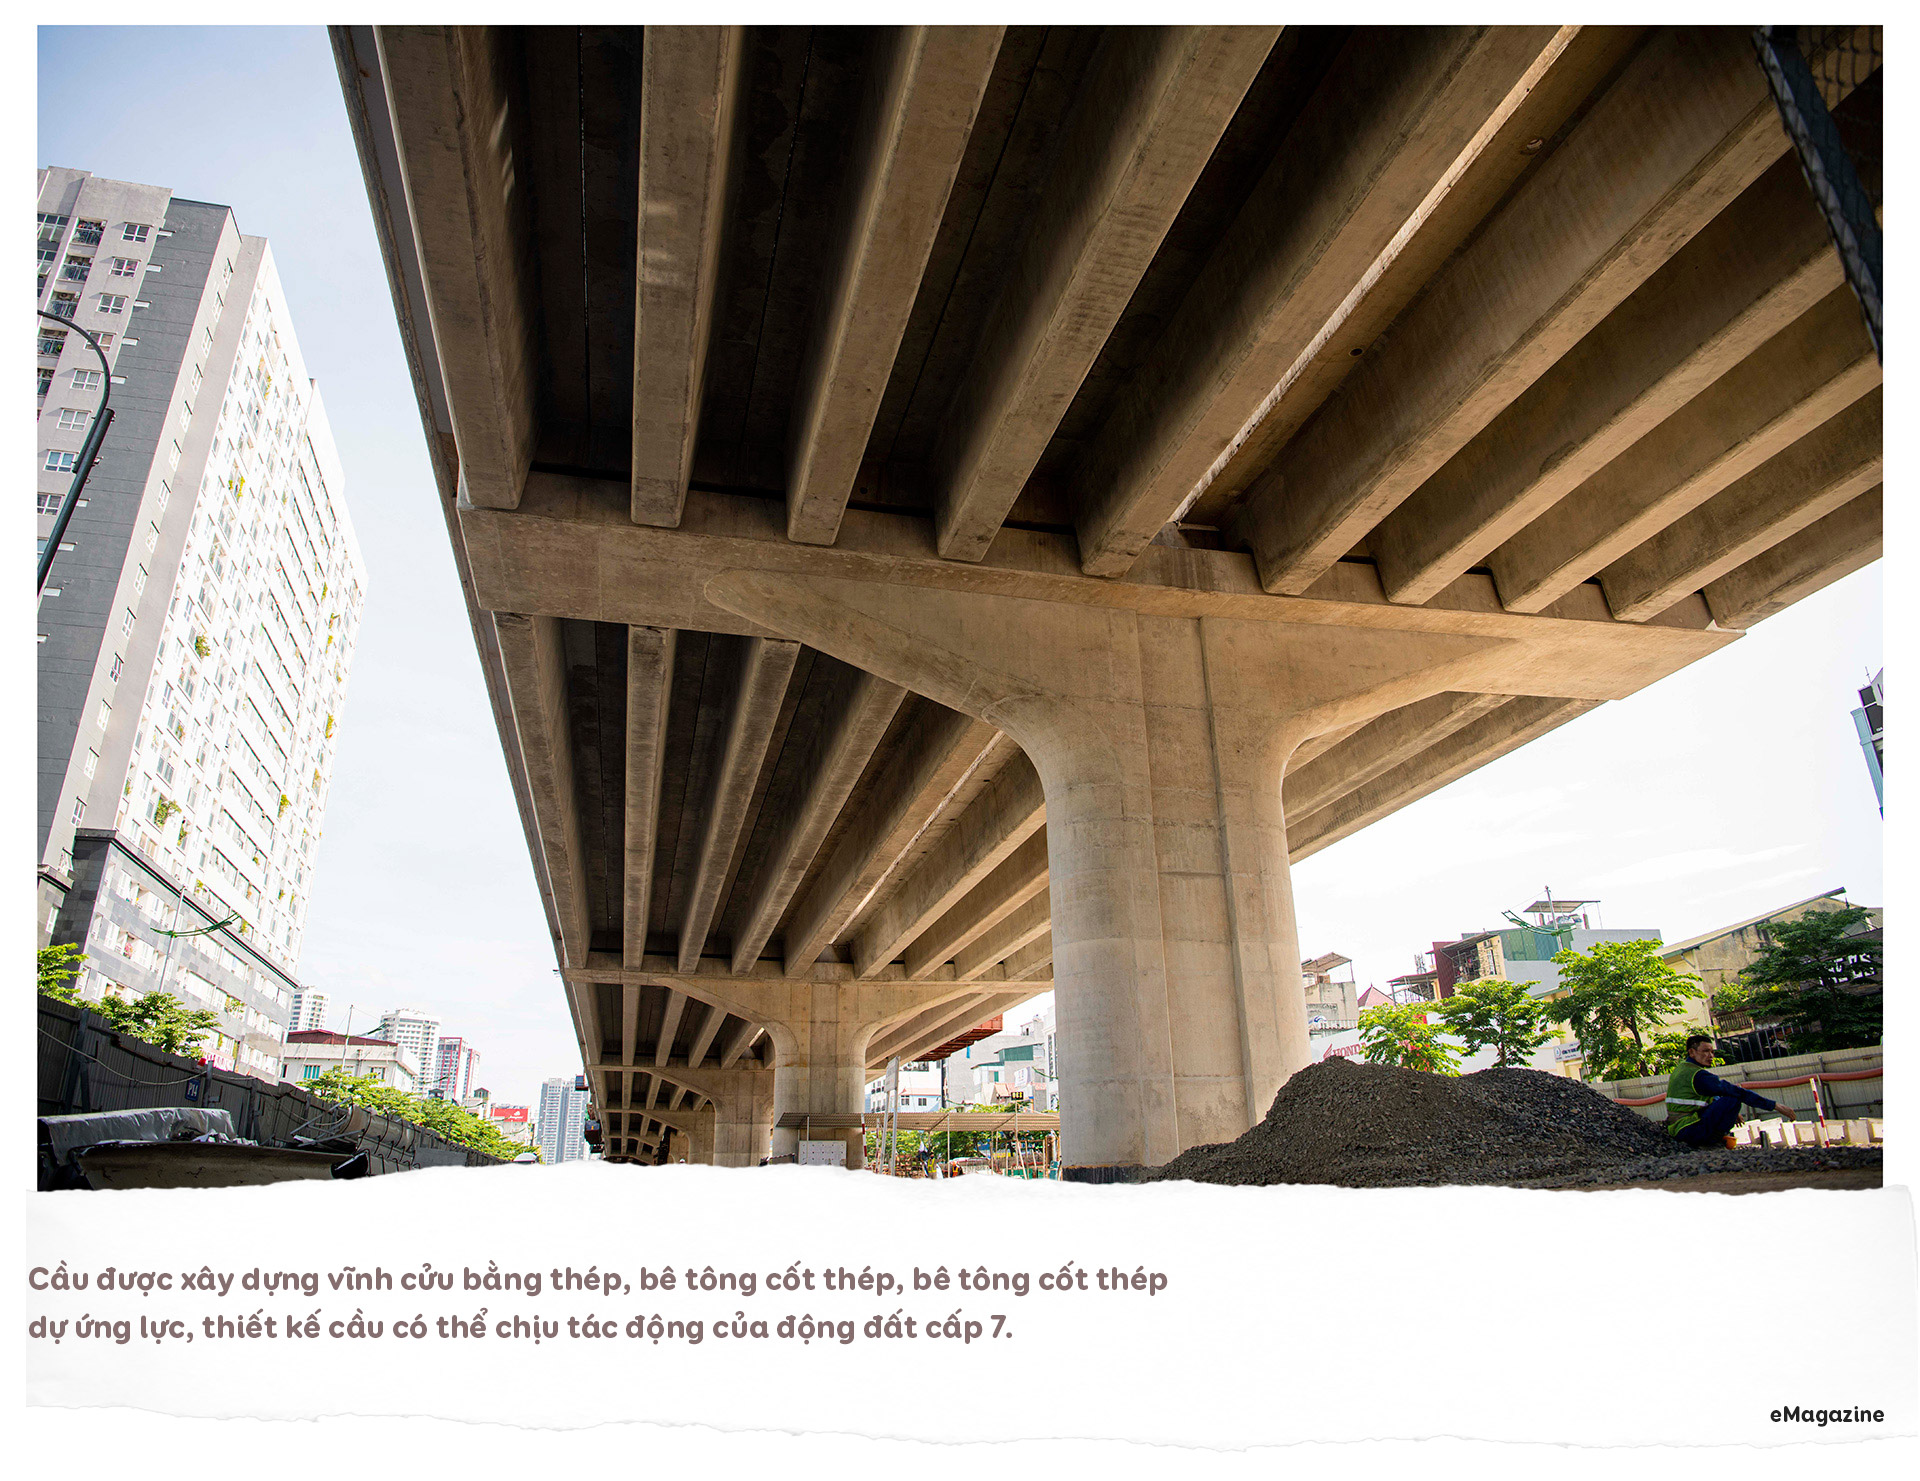 Diện mạo cầu cạn hơn 1.000 tỷ đồng/1 km nối với cây cầu 2 tầng độc nhất - 8